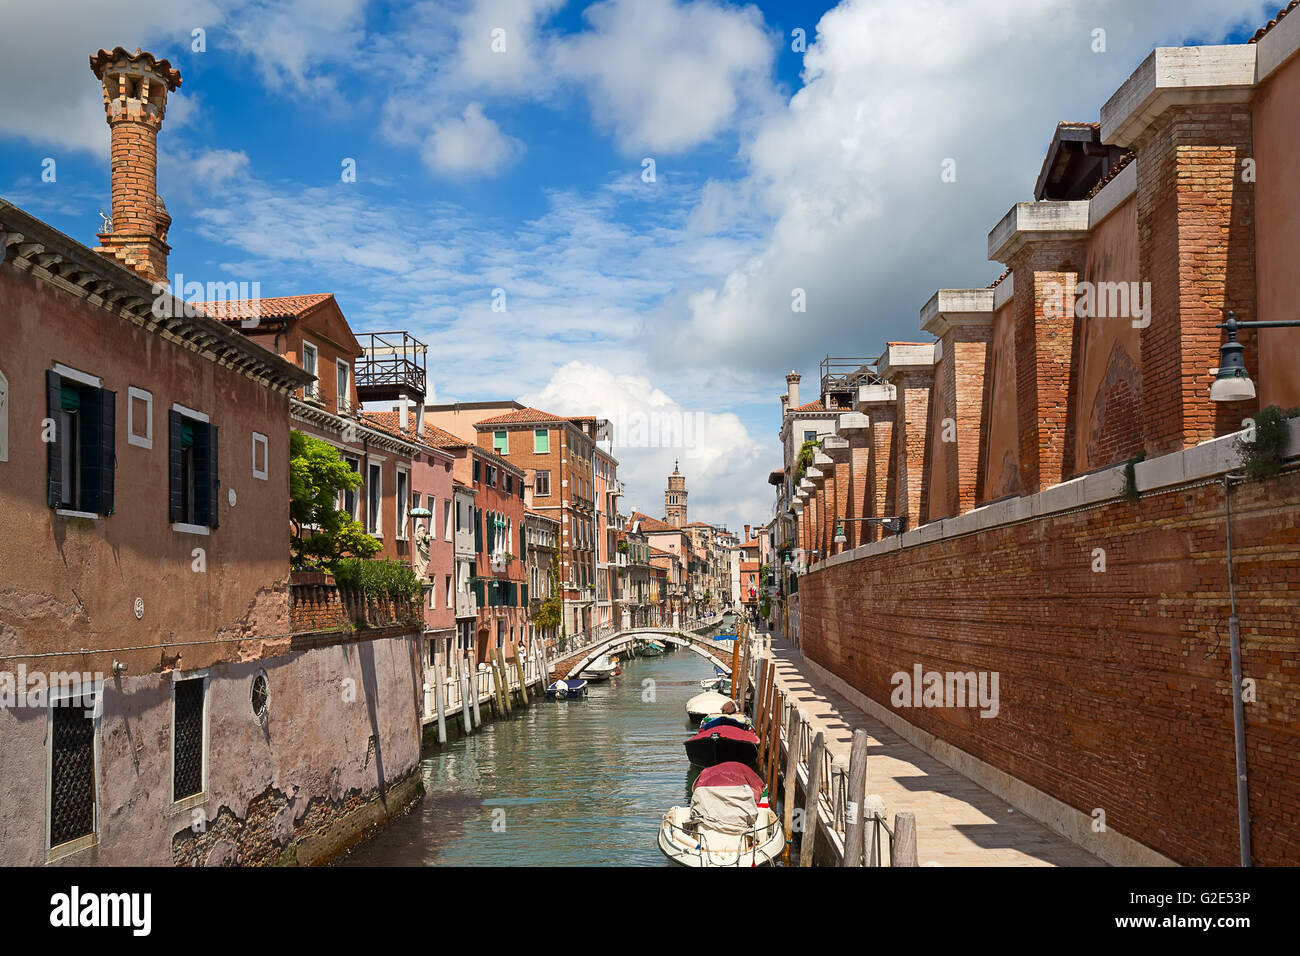 Las calles de la antigua ciudad de Venecia, Italia Foto de stock